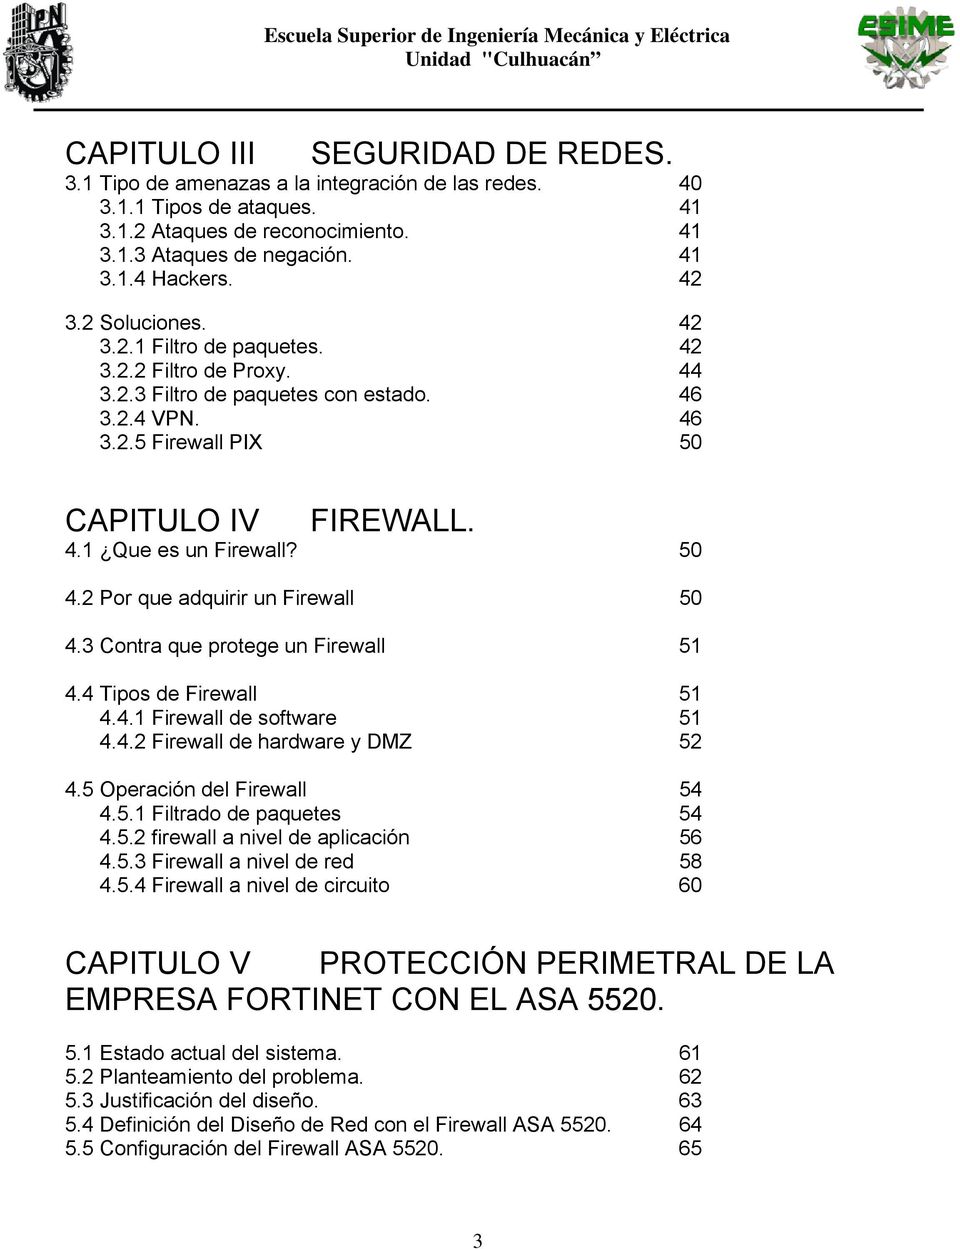 50 4.2 Por que adquirir un Firewall 50 4.3 Contra que protege un Firewall 51 4.4 Tipos de Firewall 51 4.4.1 Firewall de software 51 4.4.2 Firewall de hardware y DMZ 52 4.5 Operación del Firewall 54 4.